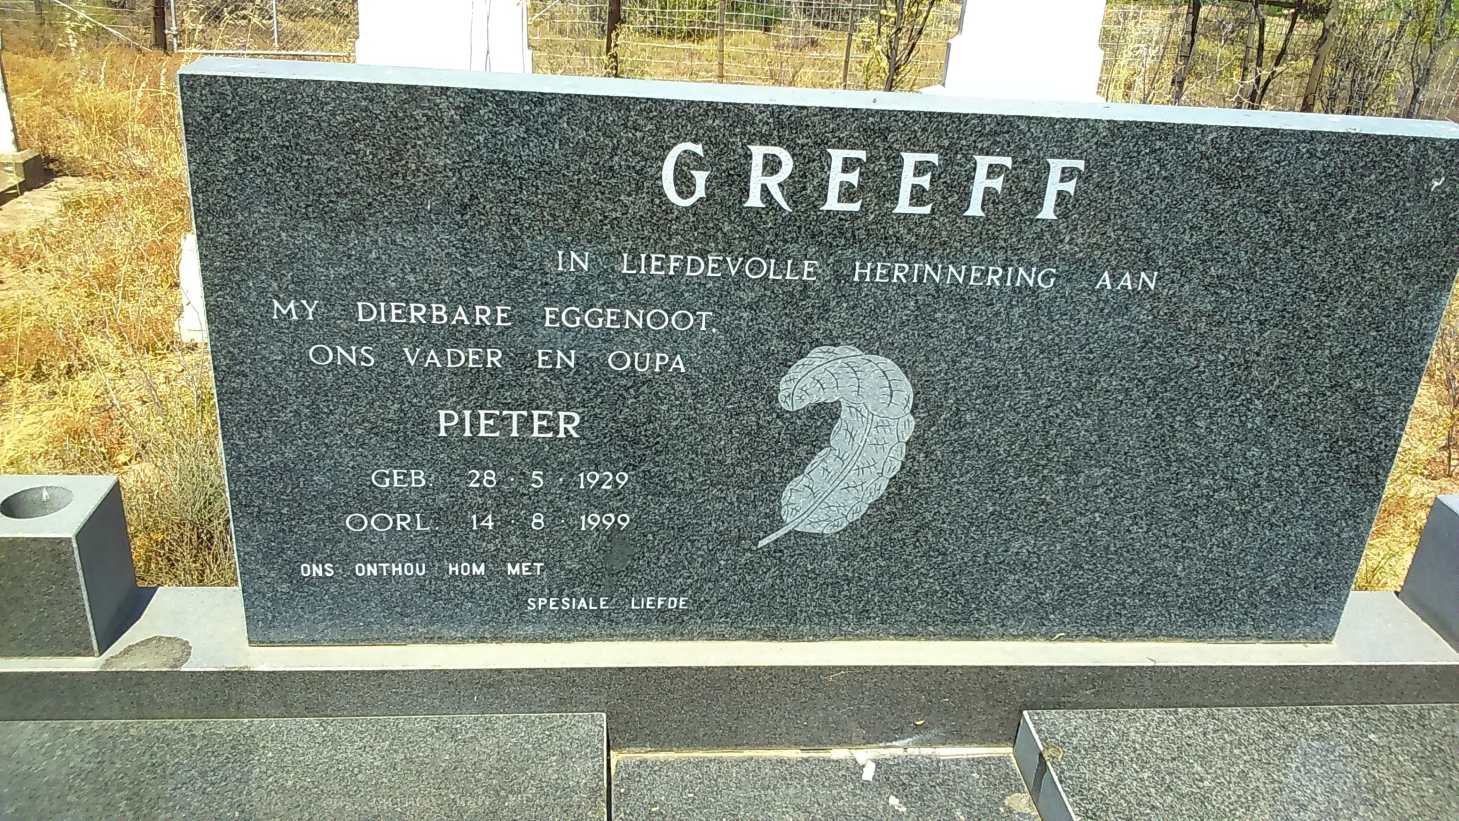 GREEFF Pieter 1929-1999